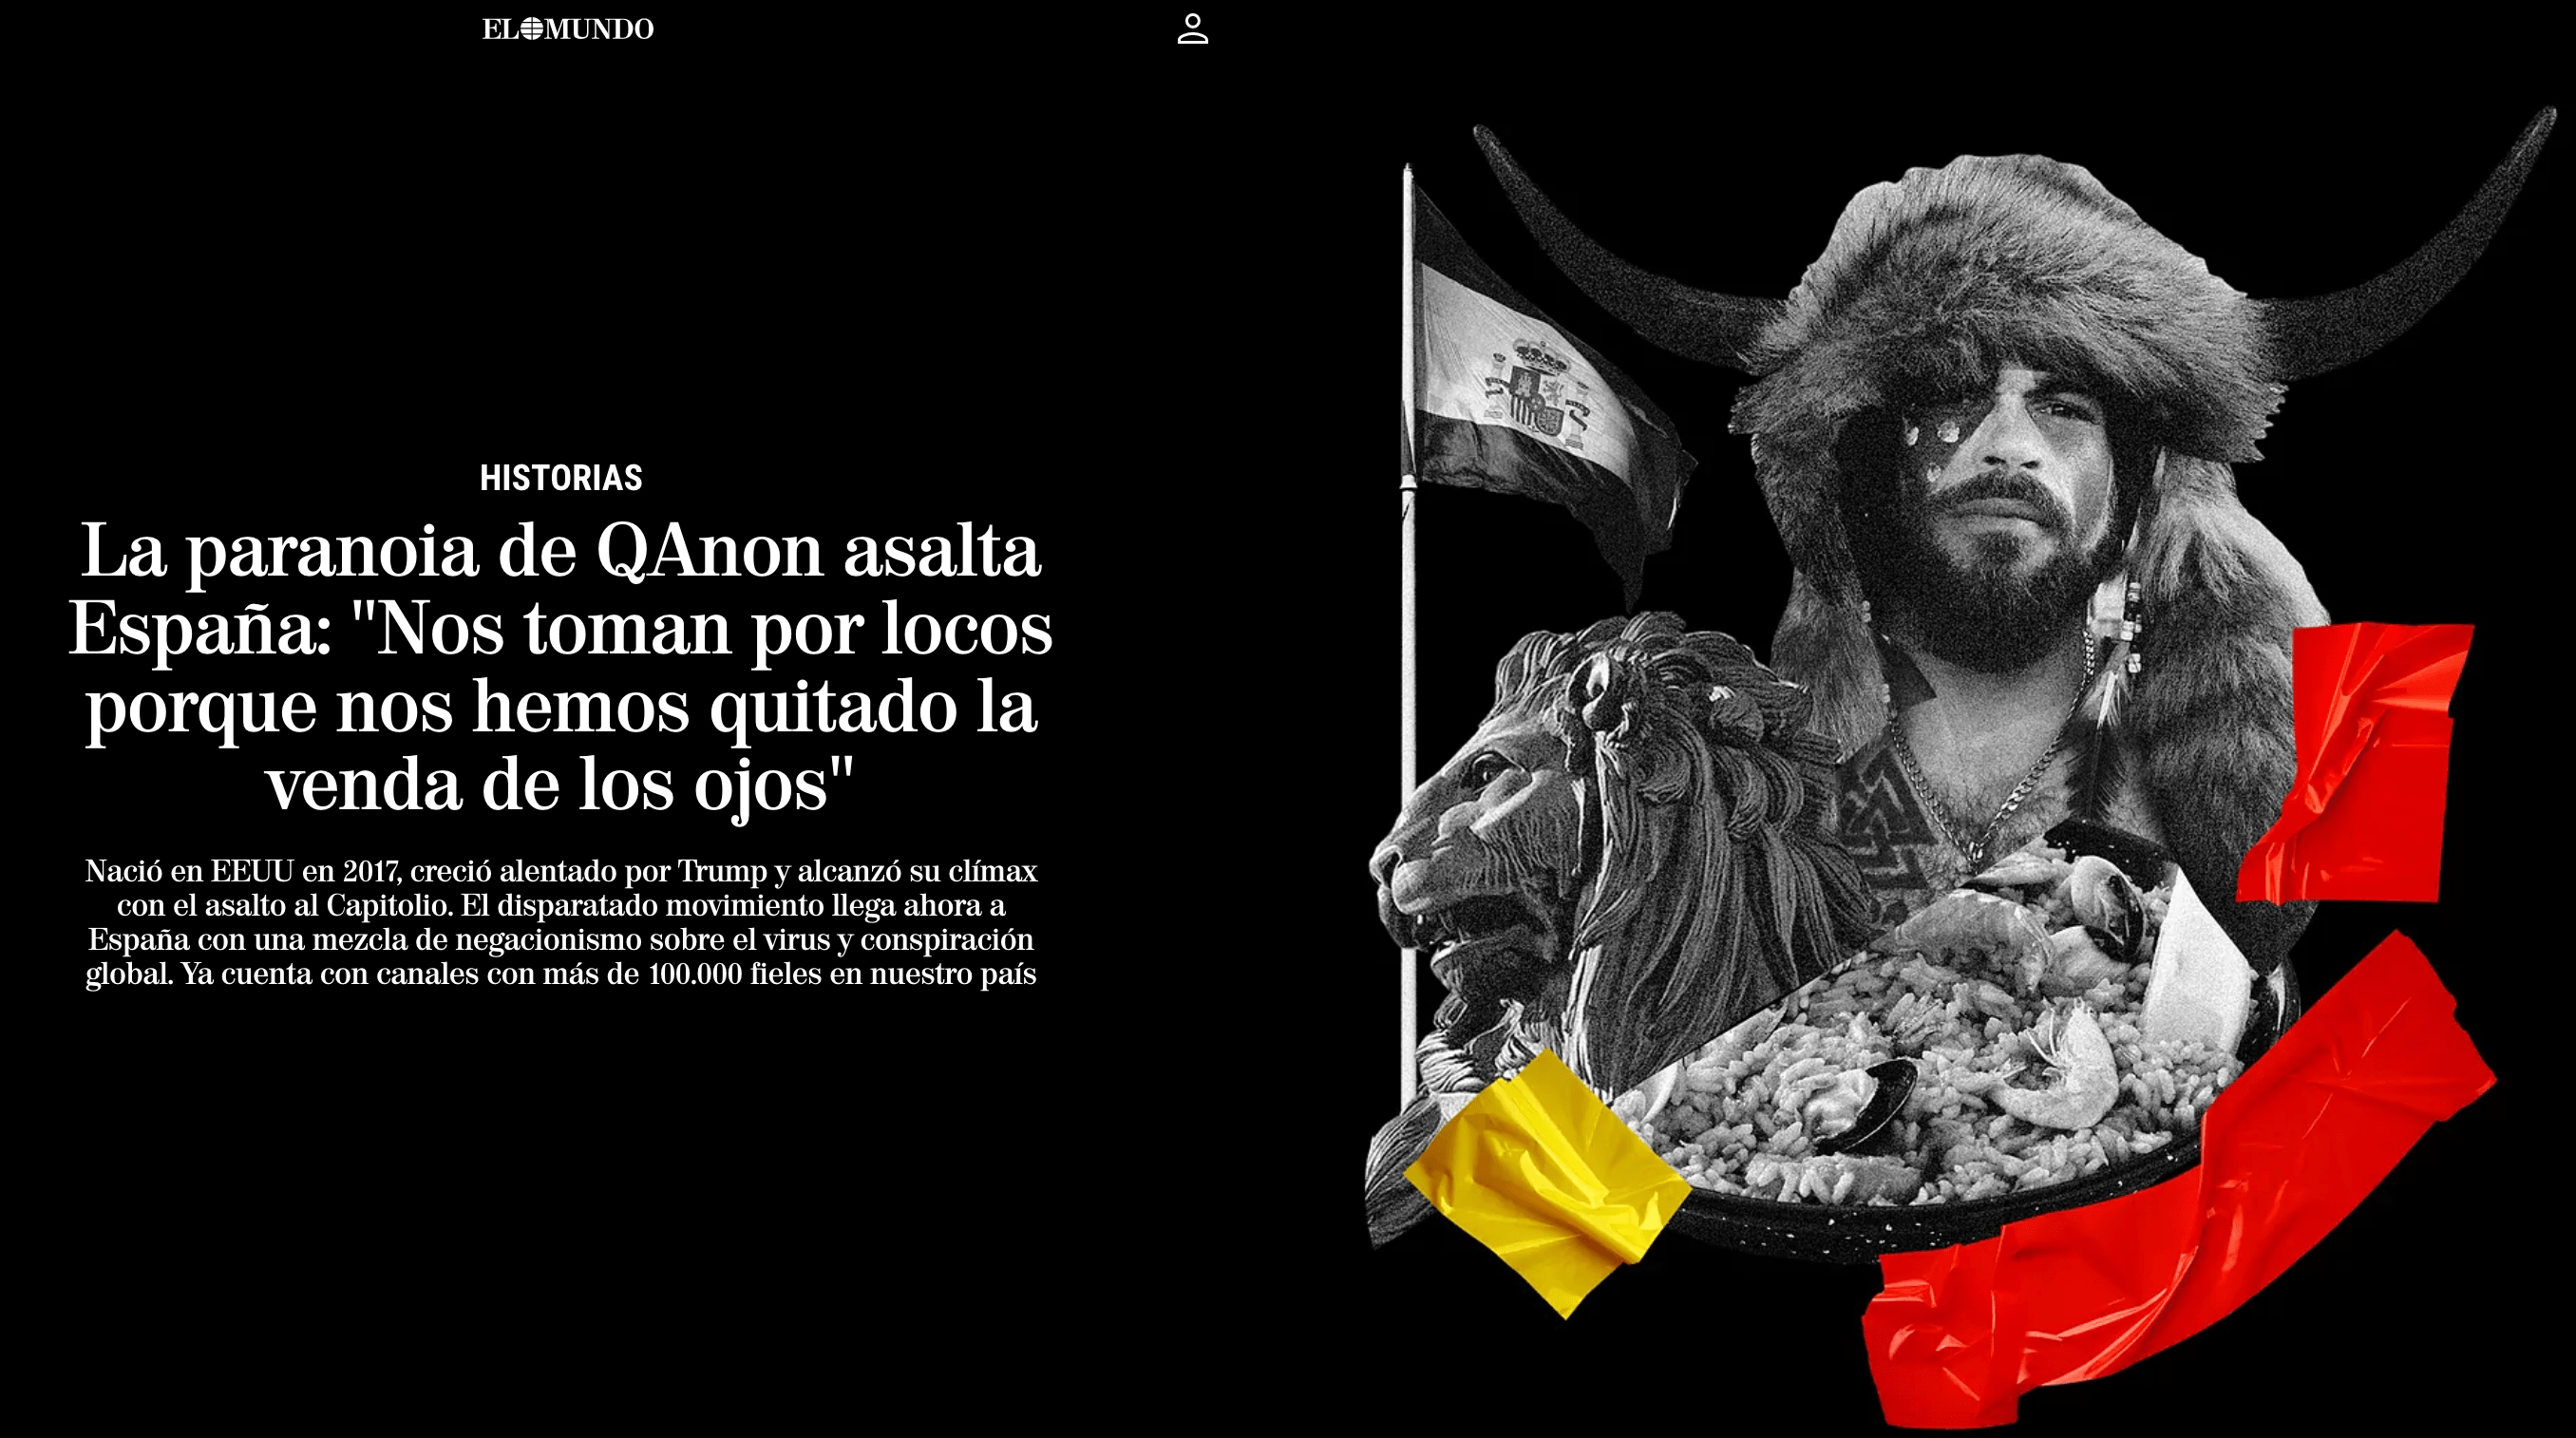 La paranoia de Qanon asalta España